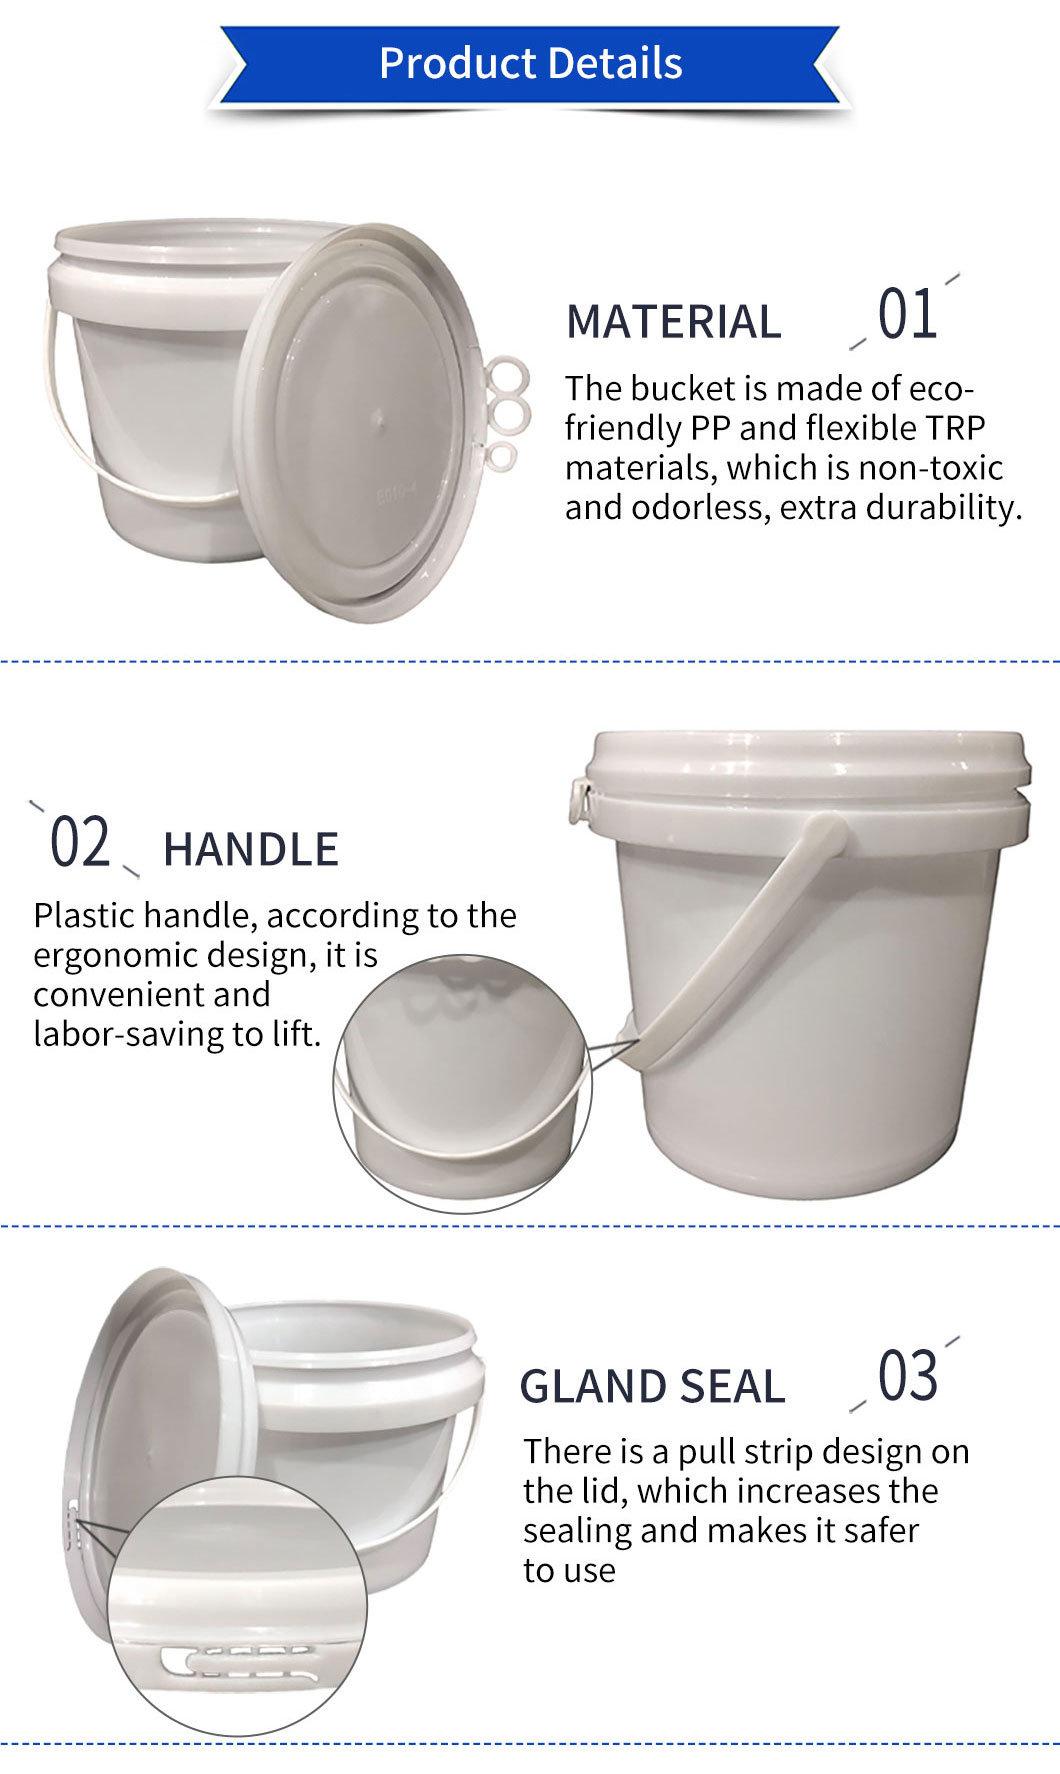 Factory Price Plastic Buckets Wholesale Plastic Pails 2L 3L 4L 6L 8L 10L